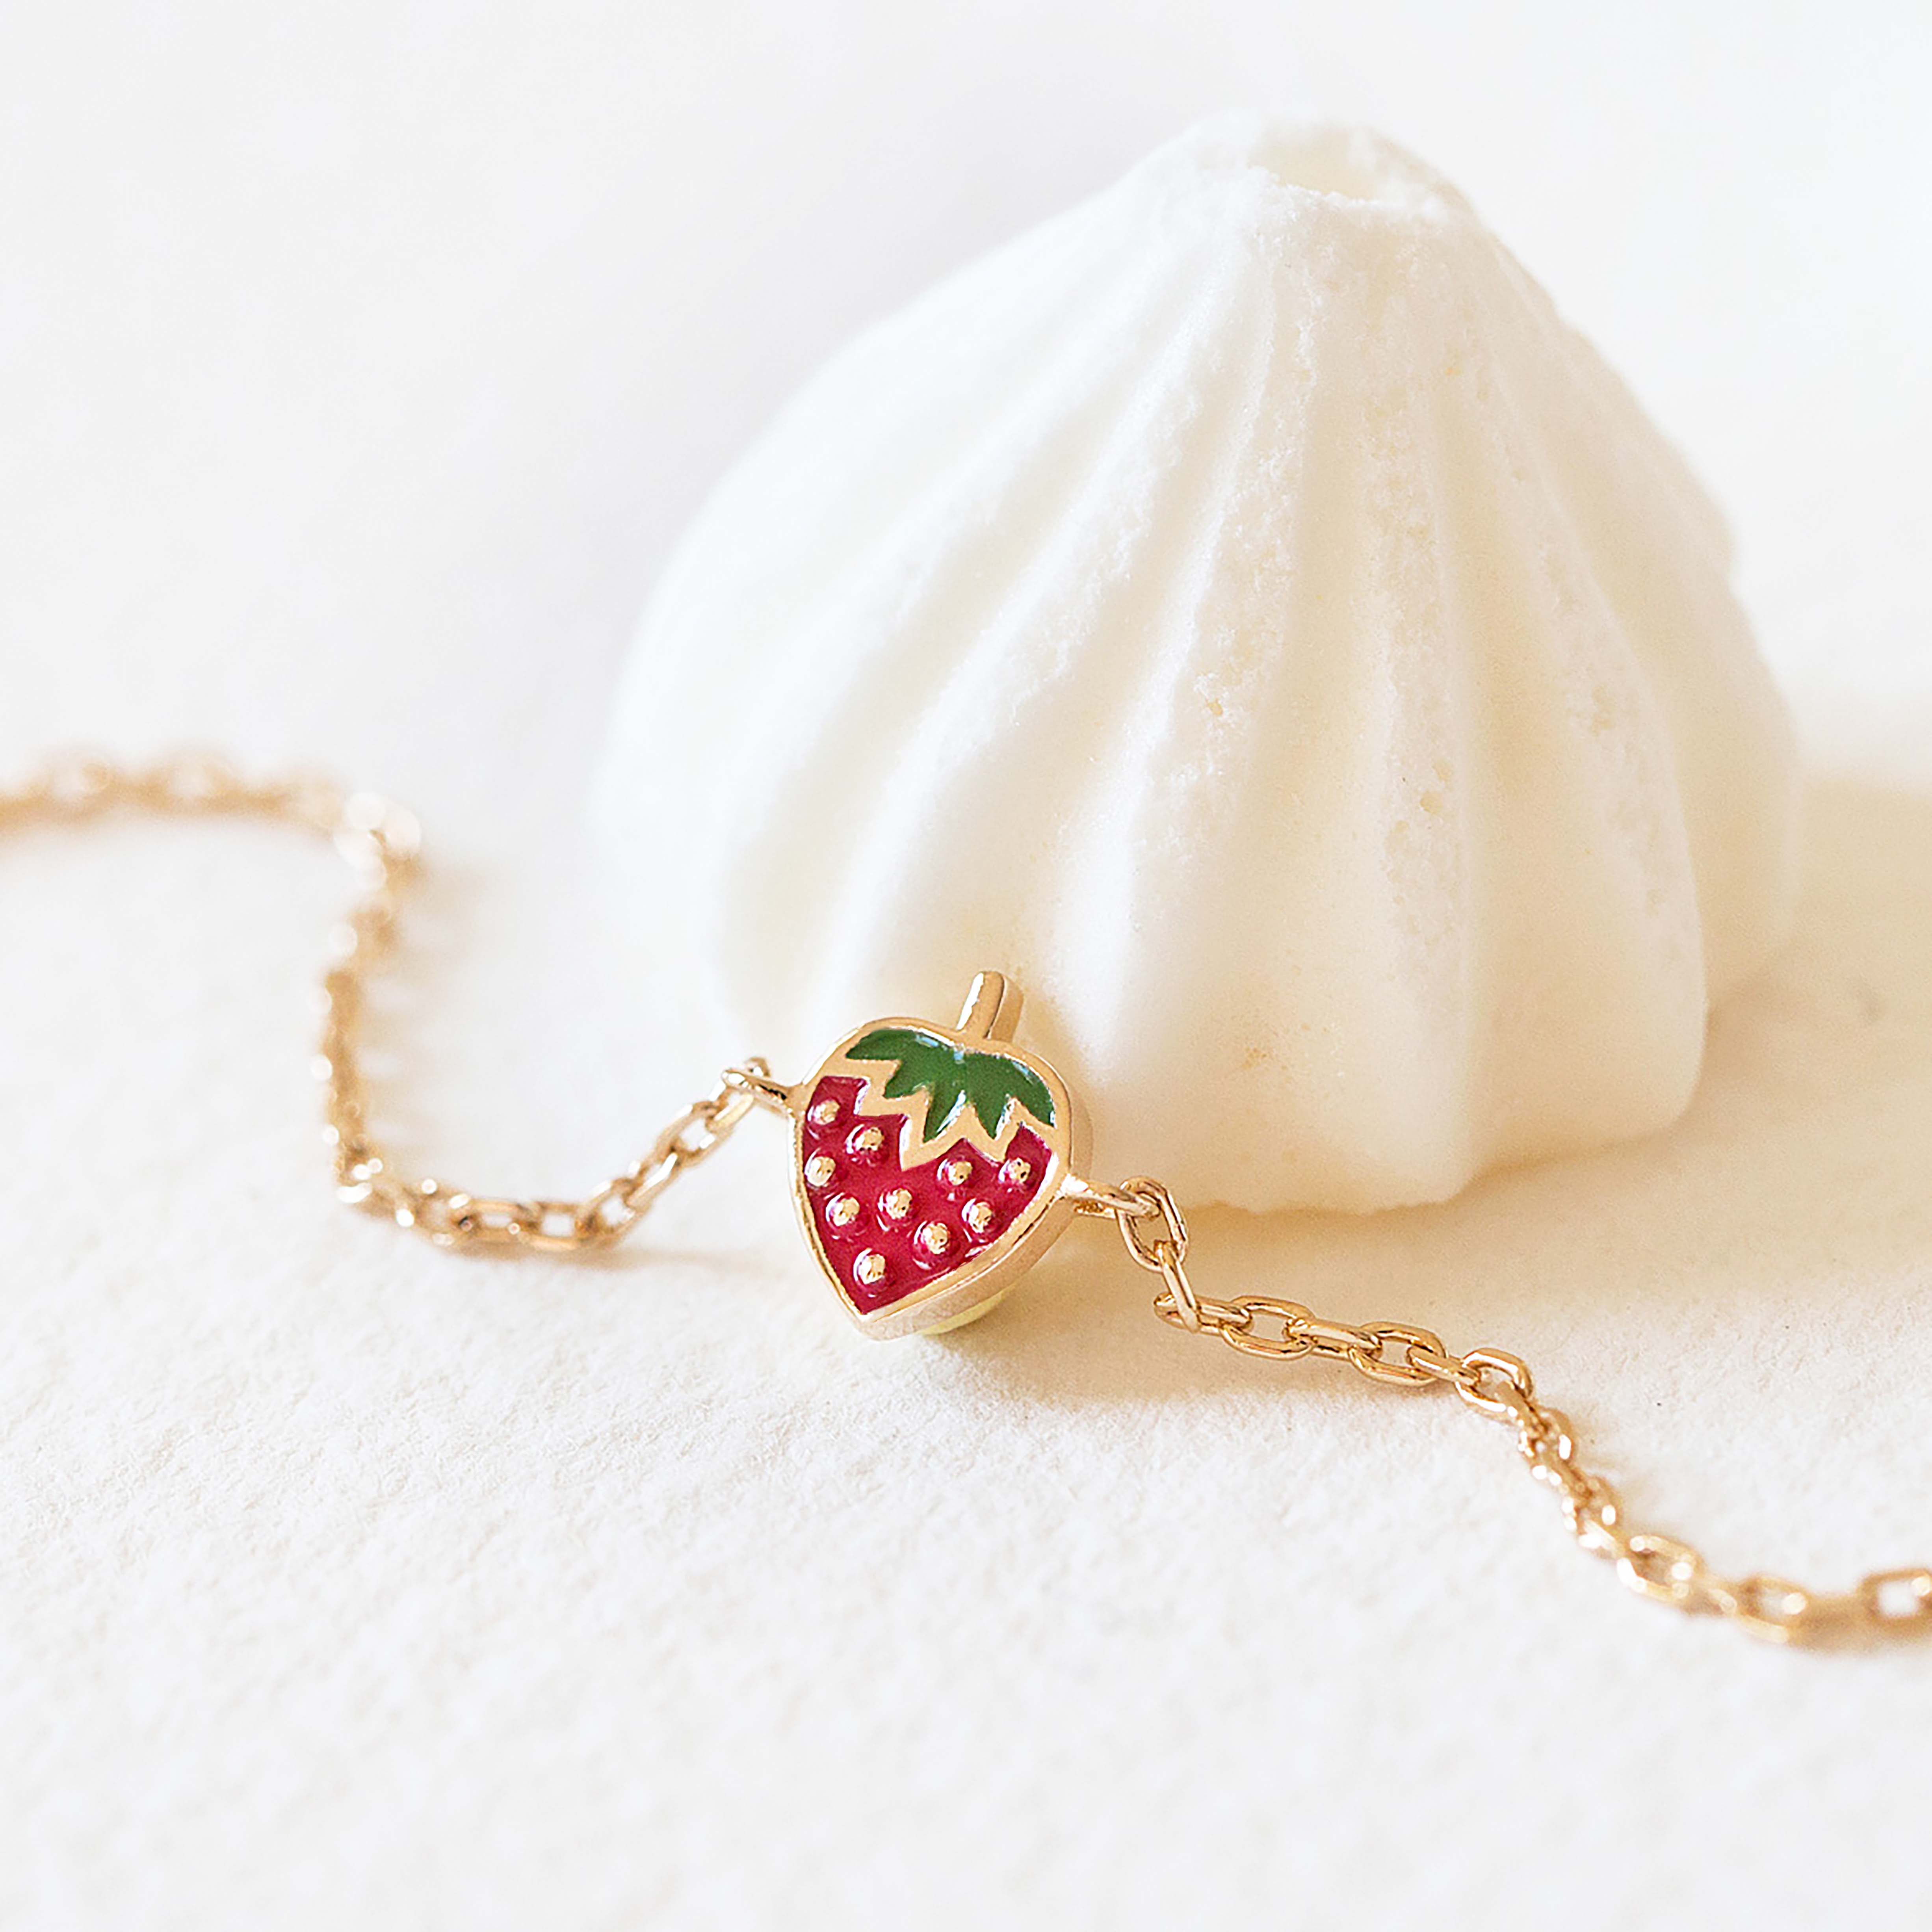 Bracelet fraise pour petite fille en argent 925/1000 MON-BIJOU